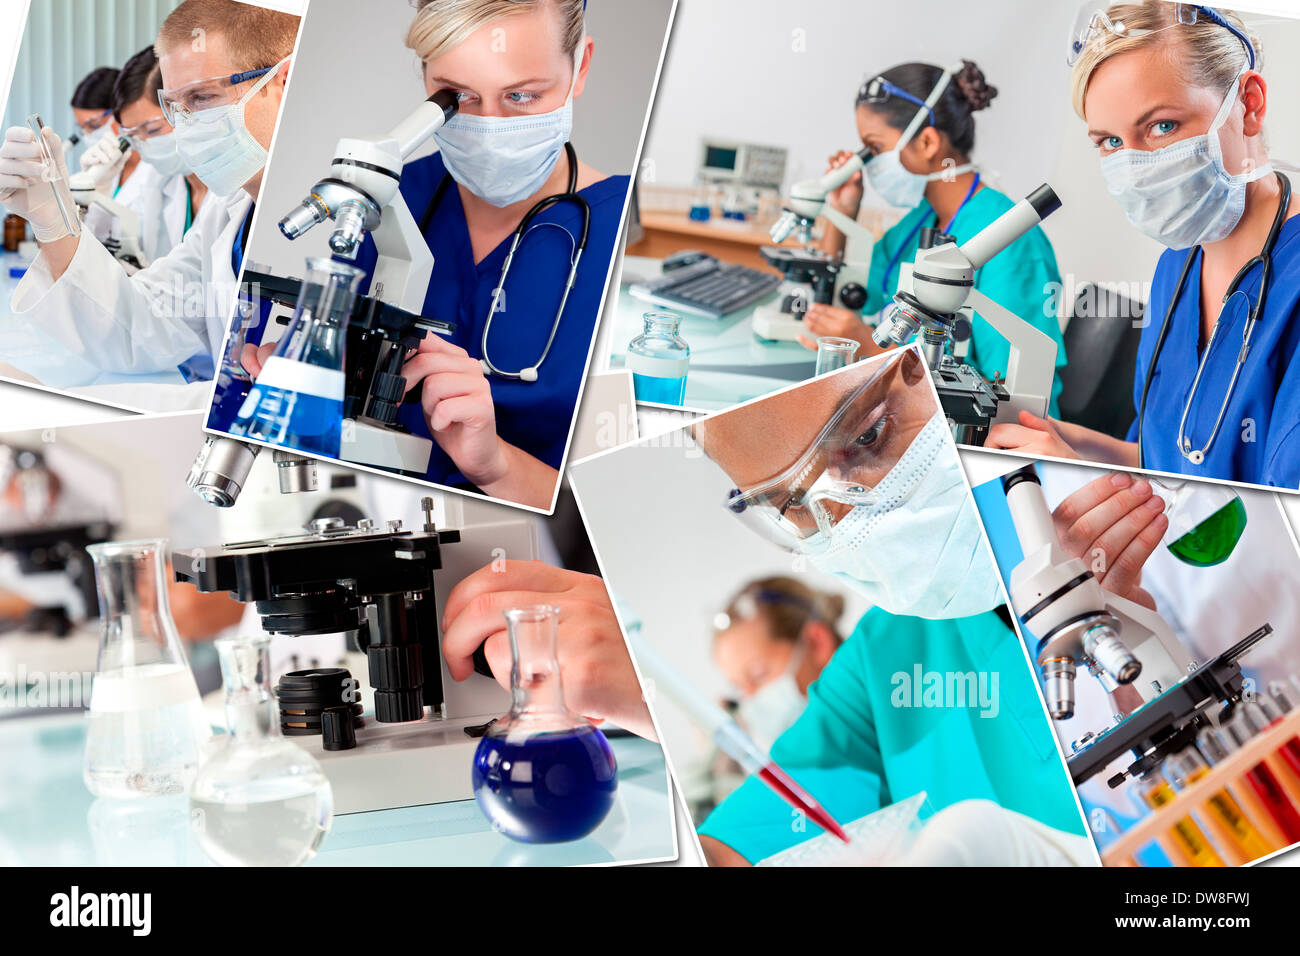 Montage von interracial medizinische Menschen, Männer, Frauen, Ärzte, Krankenschwestern, research-Team im Krankenhauslabor Analyse von Proben Stockfoto